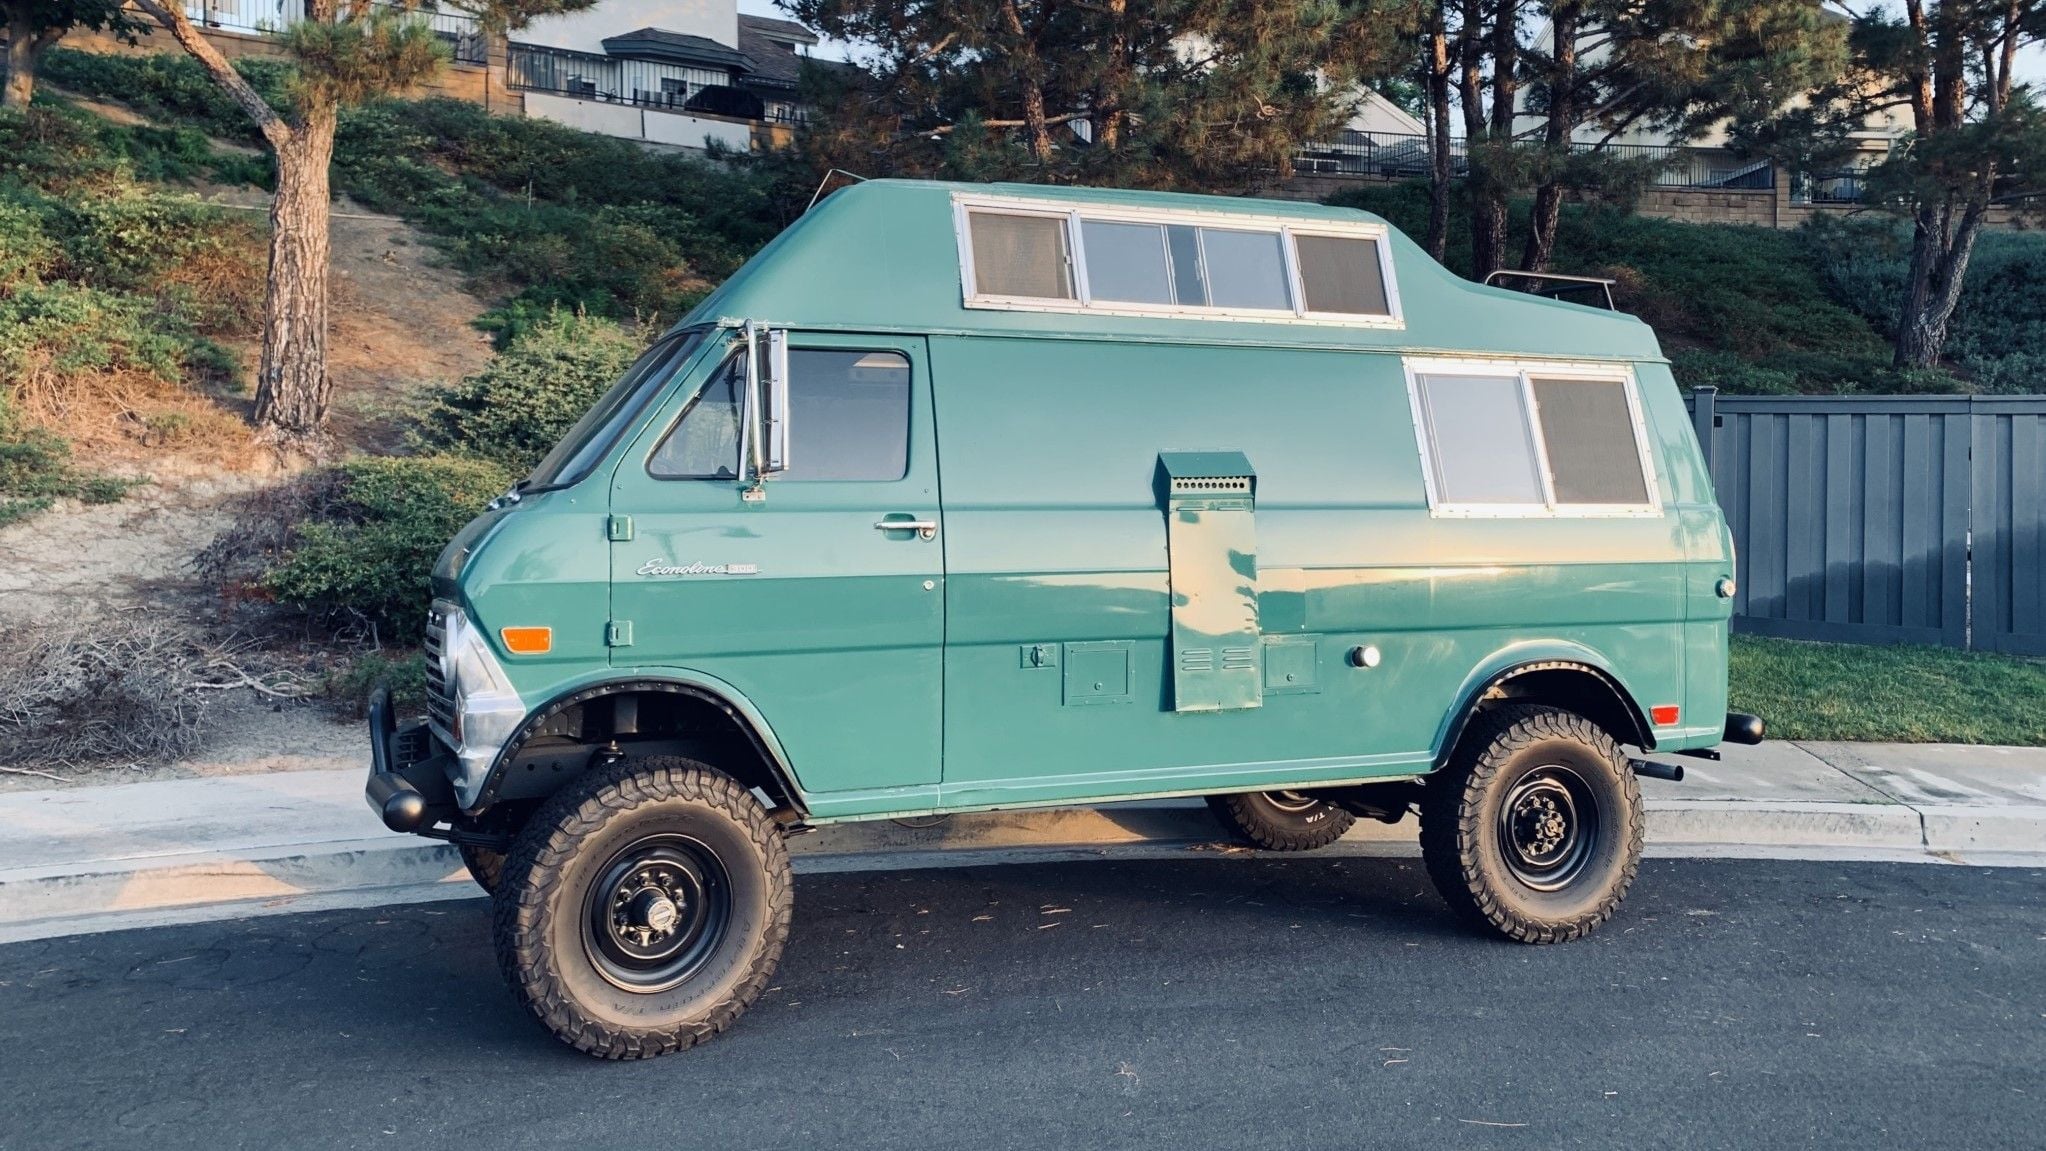 Wild 1969 Econoline Camper Van is 